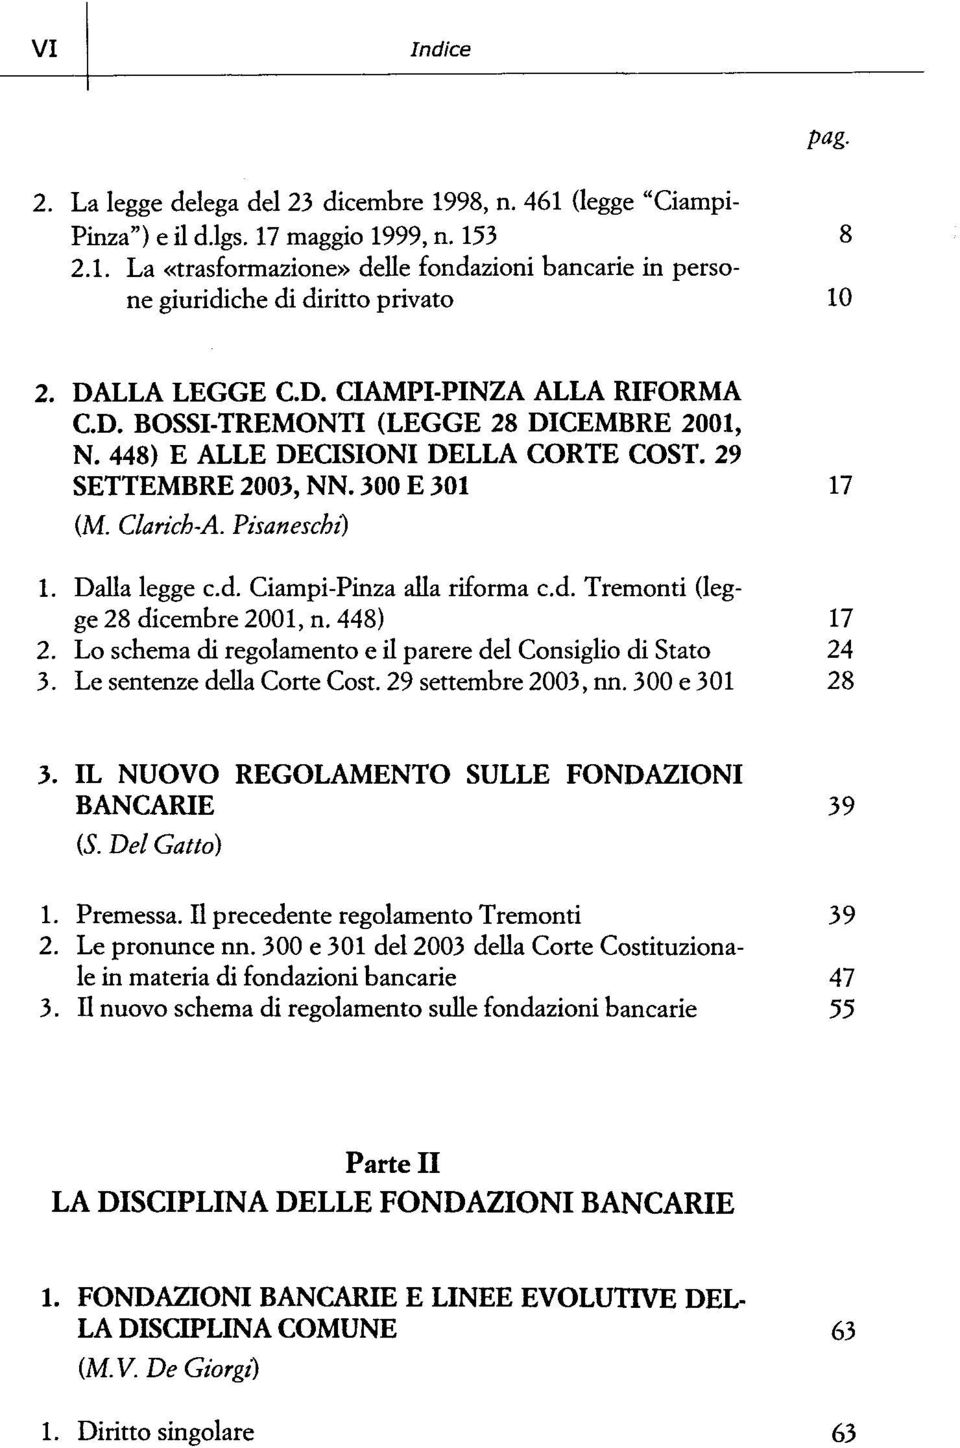 Dalla legge cd. Ciampi-Pinza alla riforma cd. Tremonti (legge 28 dicembre 2001, n. 448) 17 2. Lo schema di regolamento e il parere del Consiglio di Stato 24 3. LesentenzedellaCorteCost.